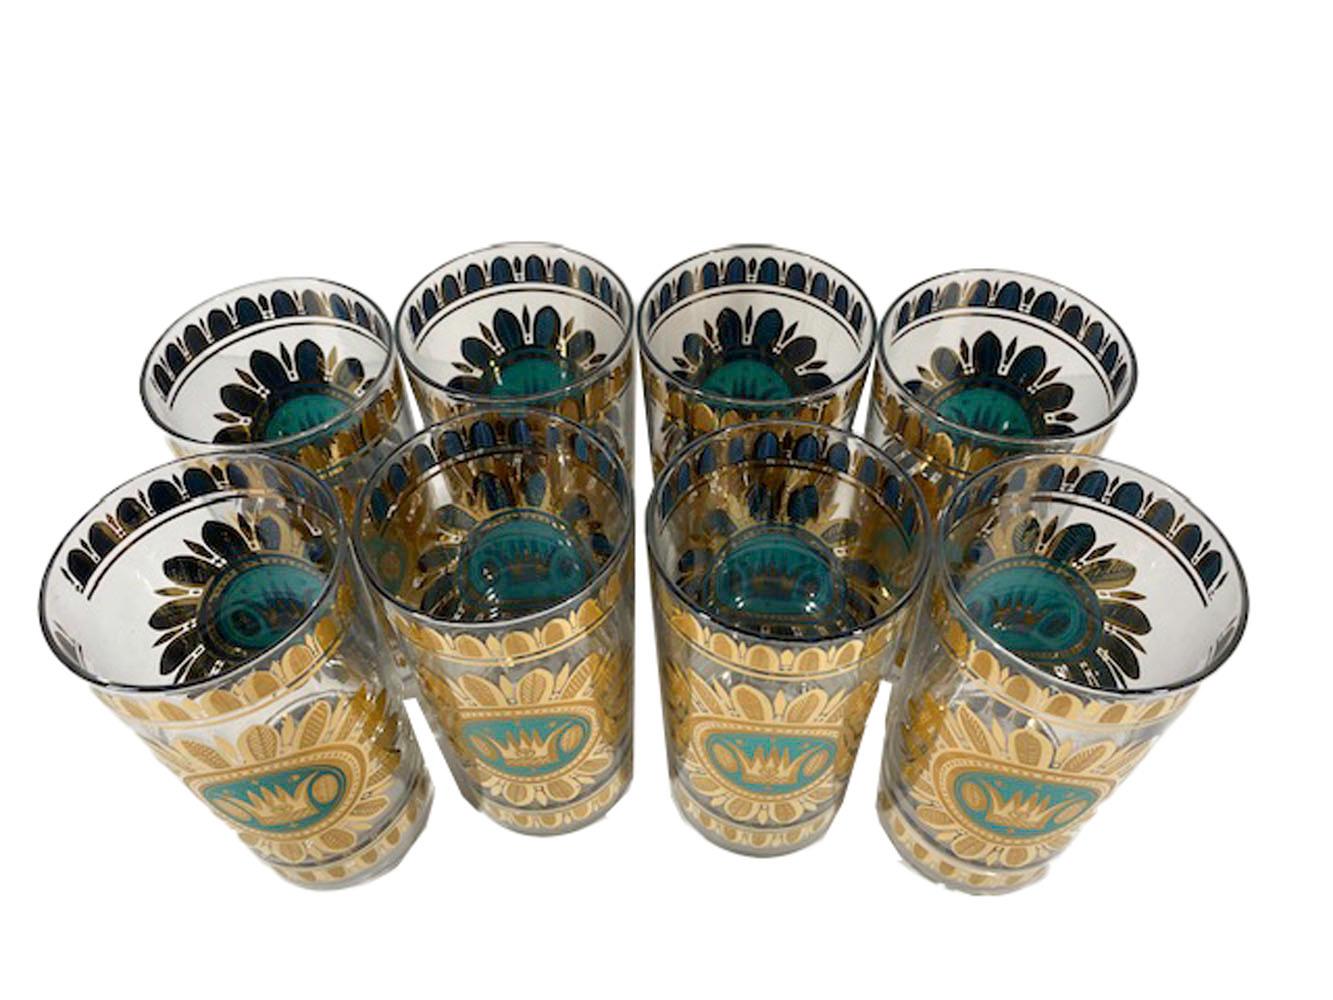 Huit verres highball vintage conçus par Georges Briard dans le motif Regalia en or 22k avec des détails aqua et bleus.